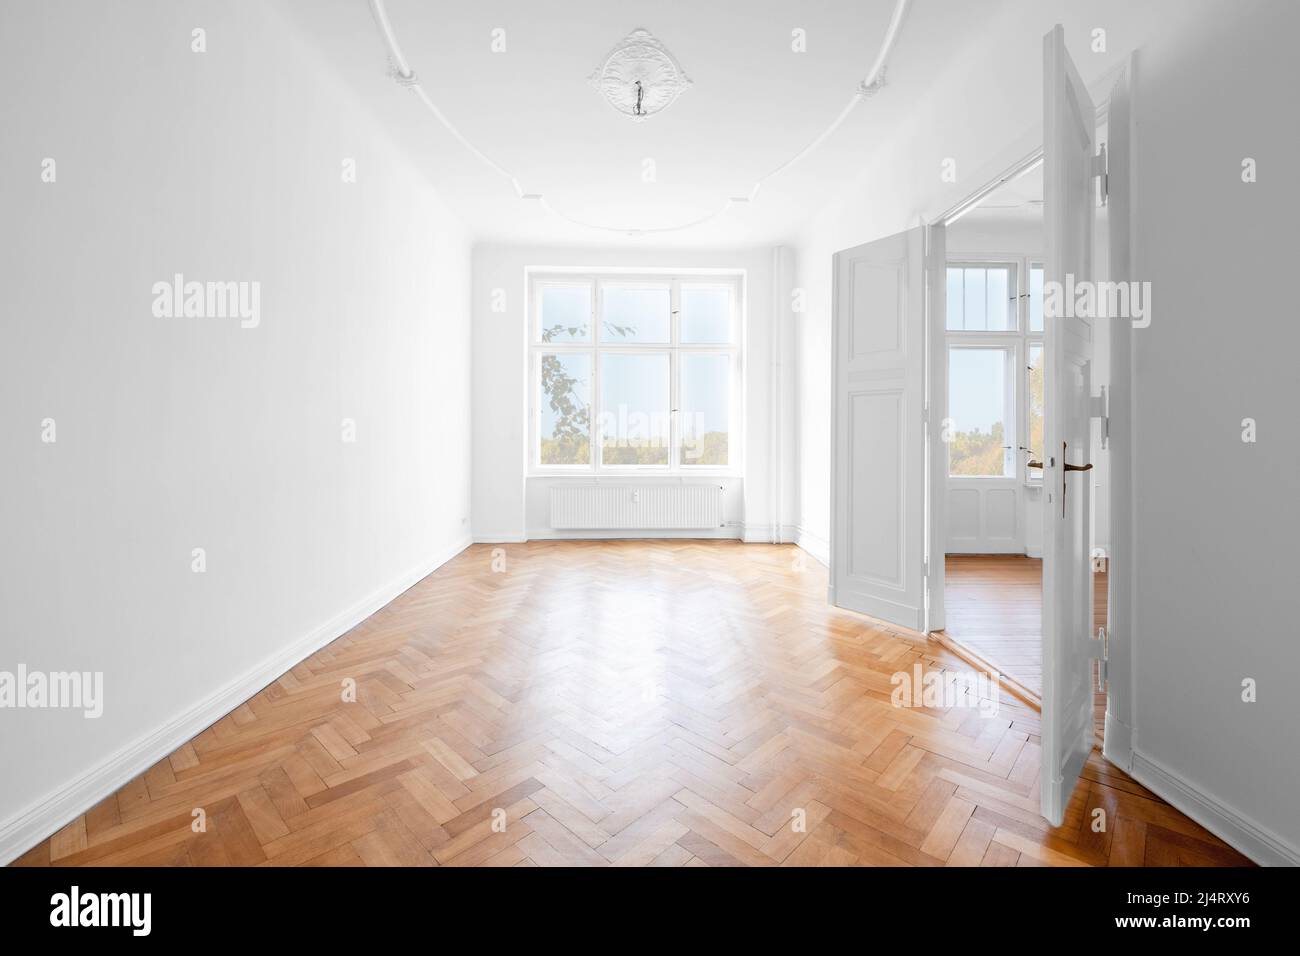 Neues, leeres Apartment-Zimmer mit Holzparkettboden Stockfoto